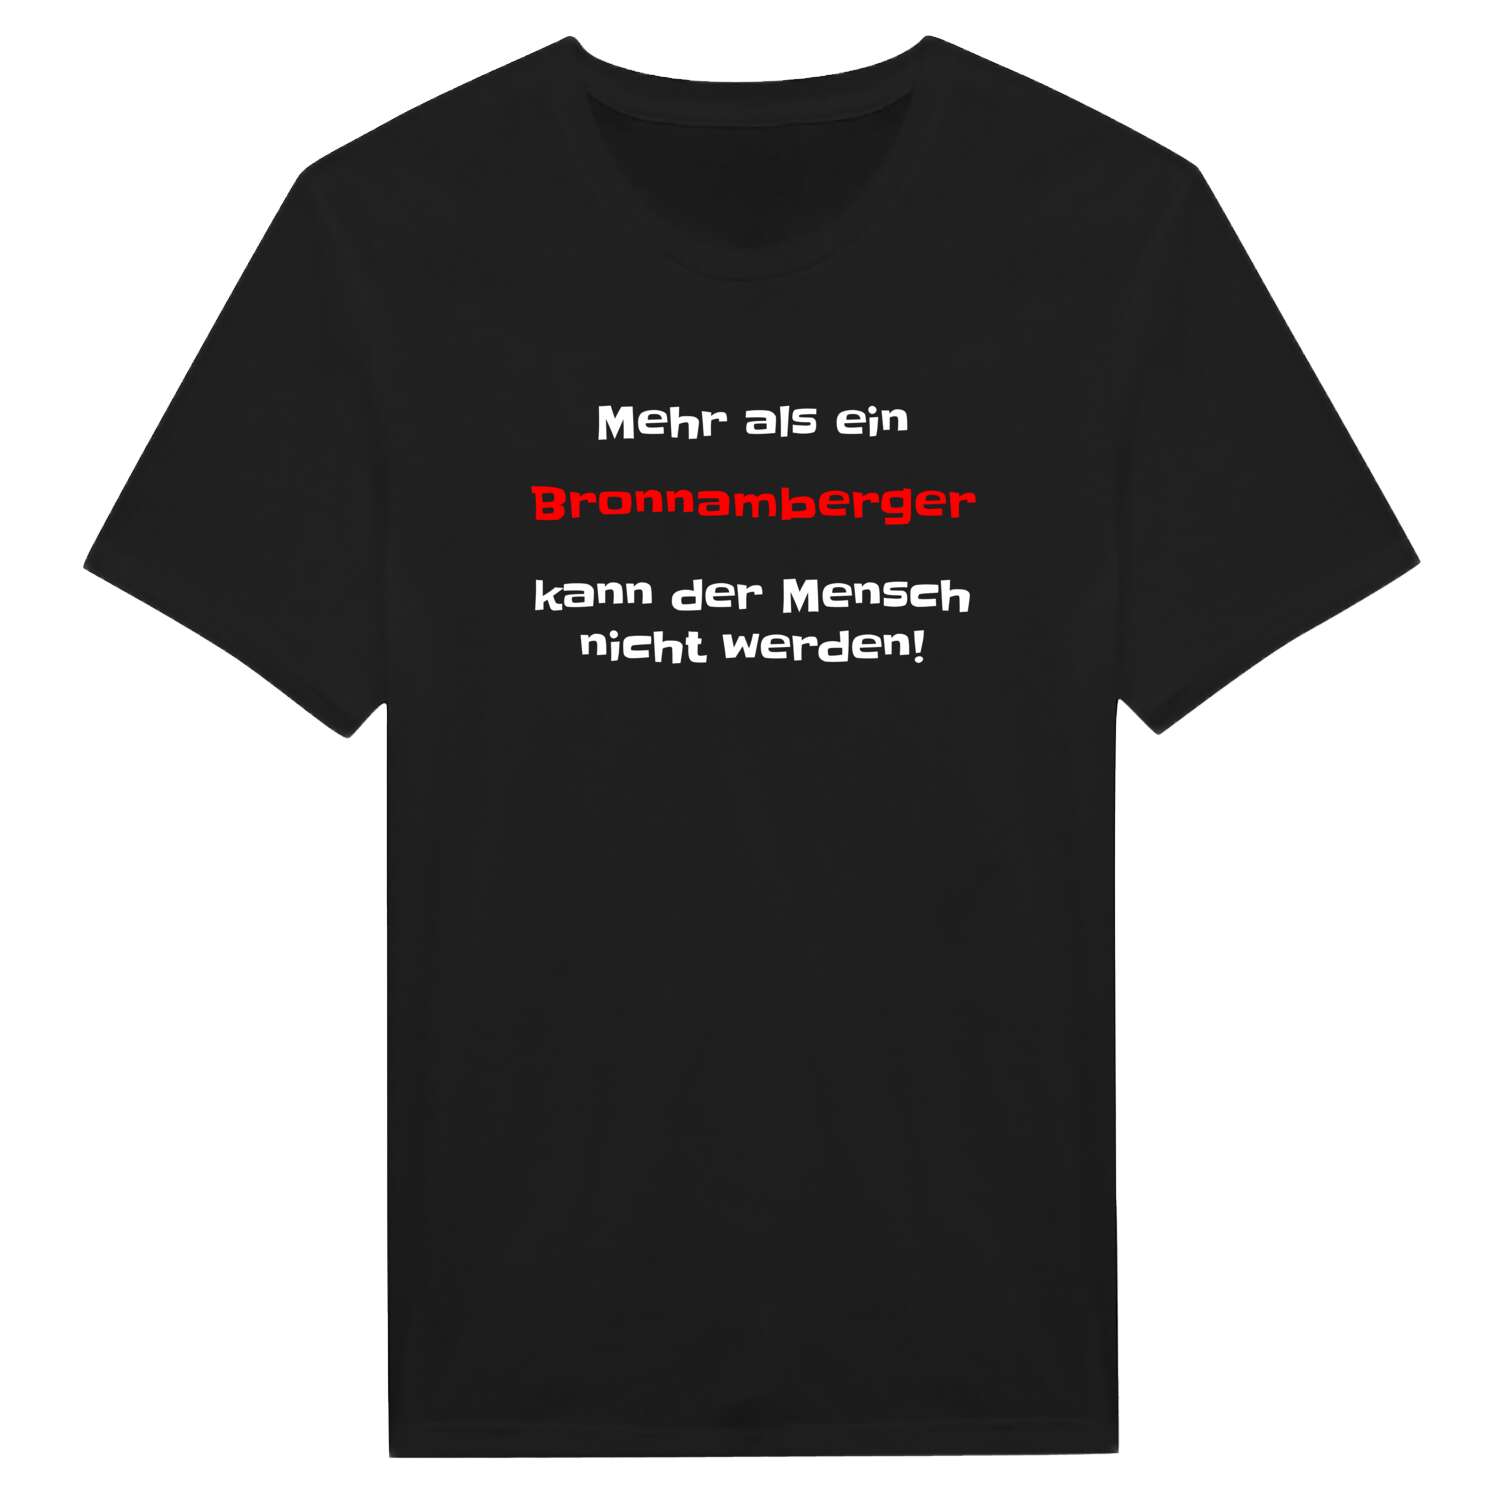 Bronnamberg T-Shirt »Mehr als ein«